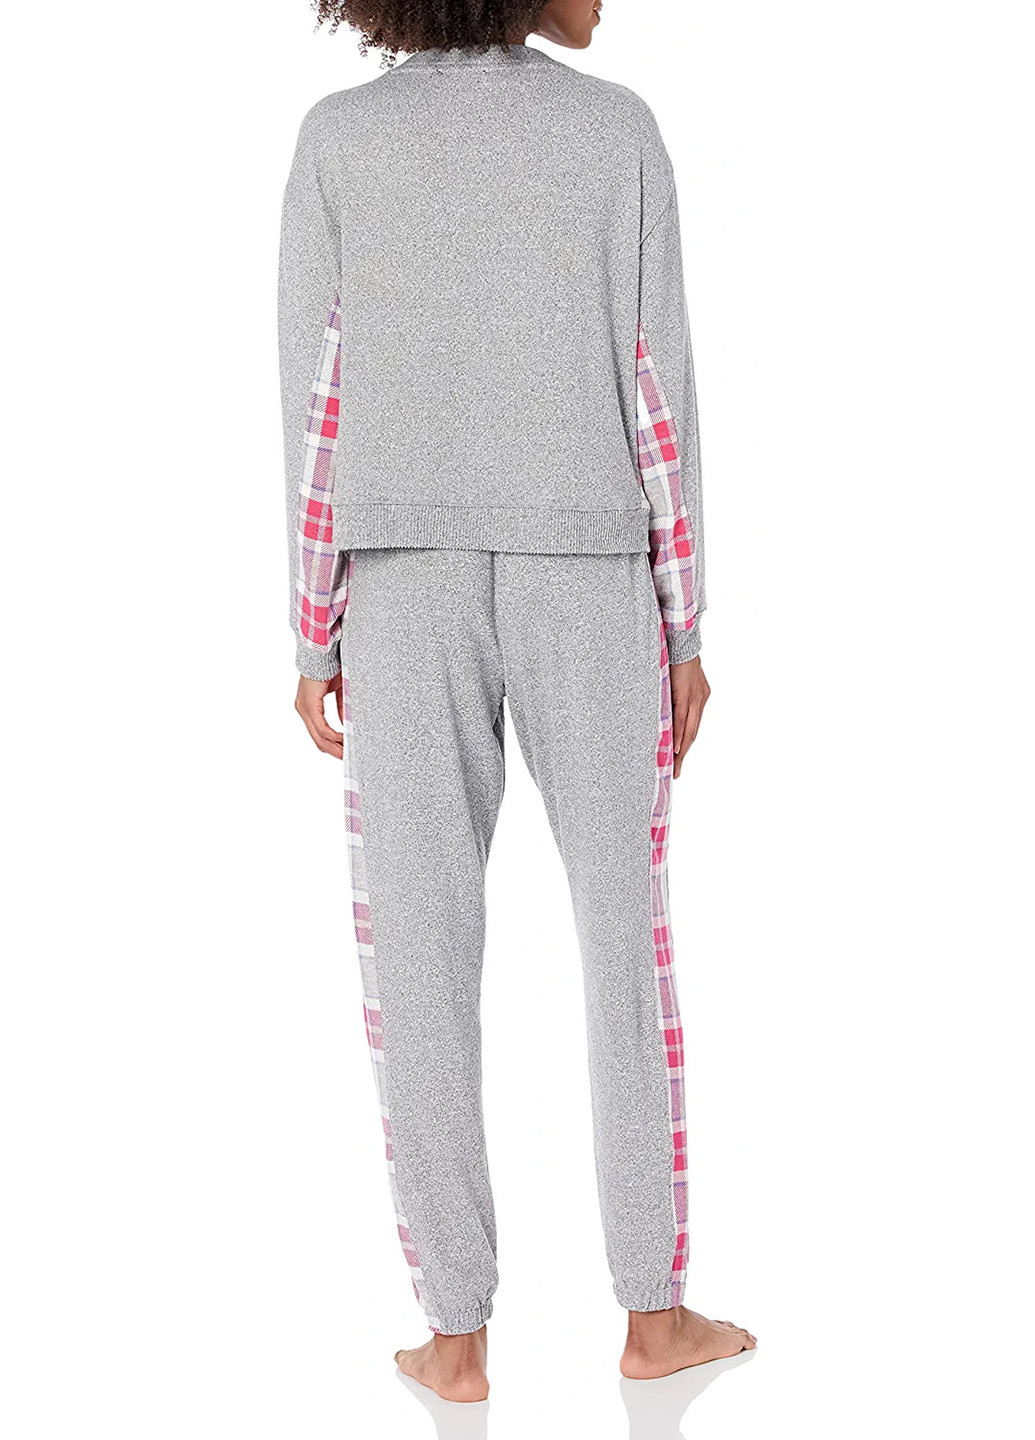 Серая всесезон пижама (лонгслив, брюки) лонгслив + брюки Tommy Hilfiger